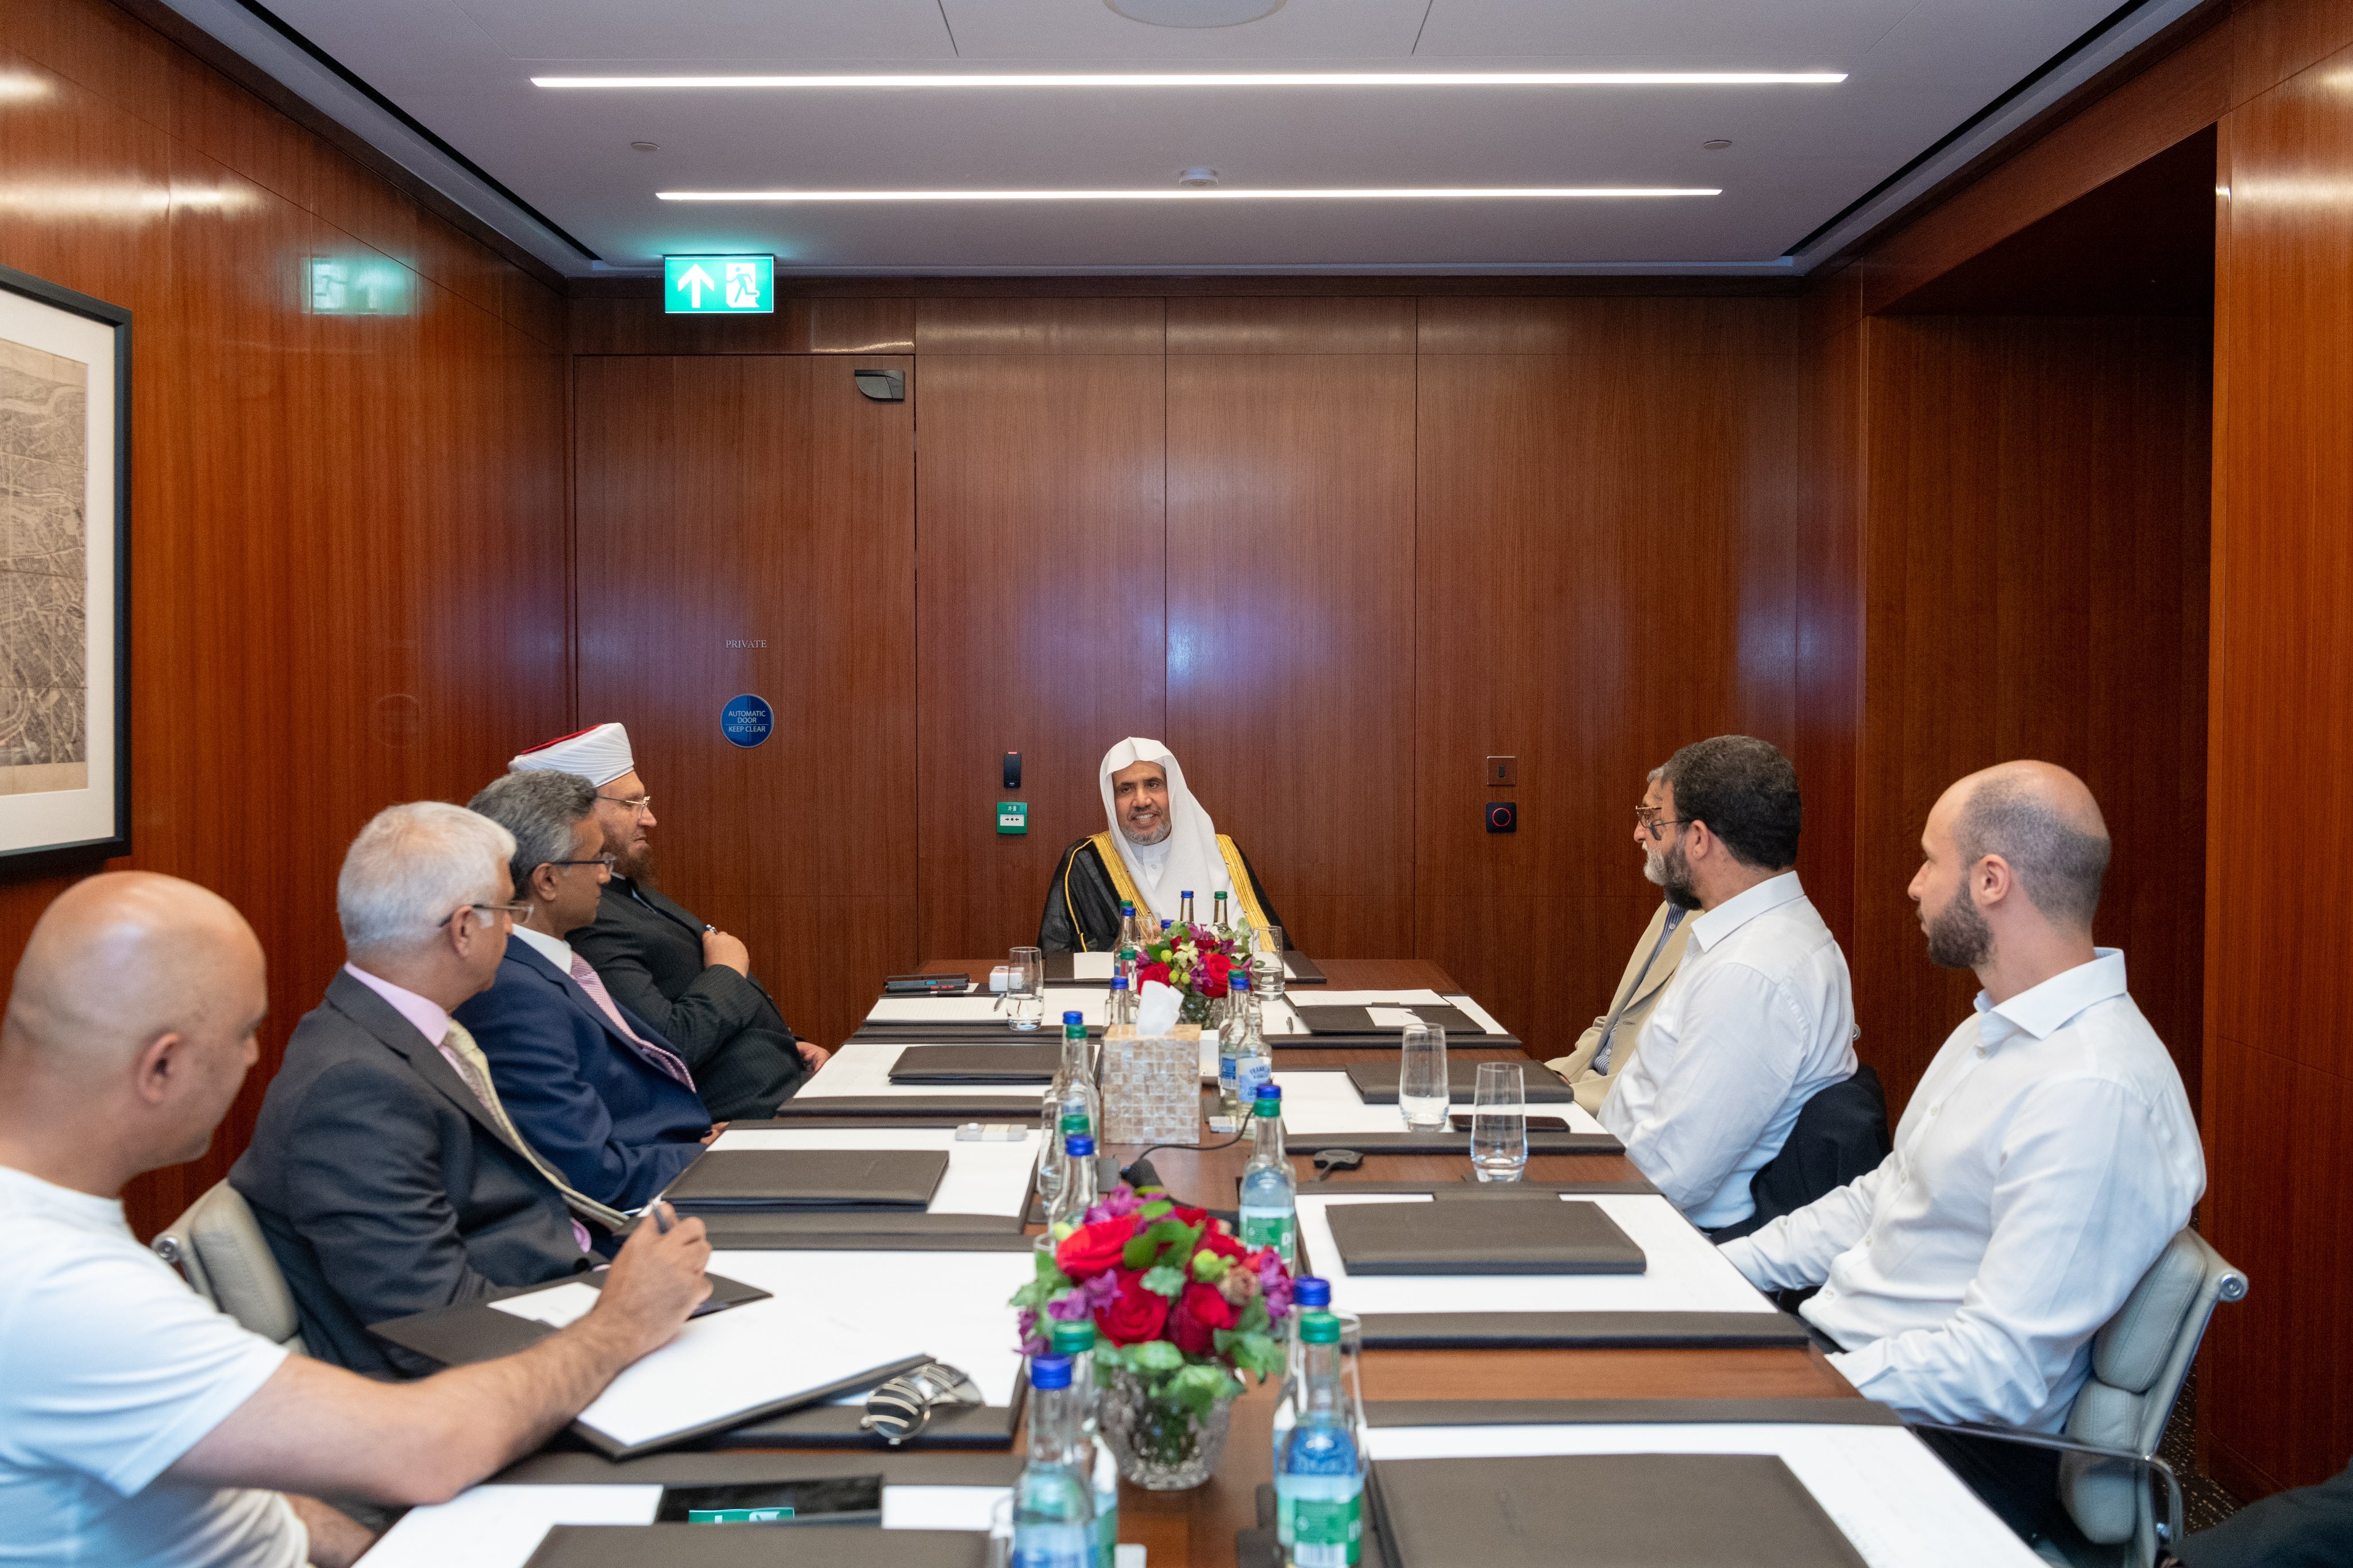 En Londres, el Sheij Mohammed Alissa, Secretario General de la Liga del Mundo Islámico y Presidente de la Comisión de Ulemas, se reunió con líderes islámicos británicos